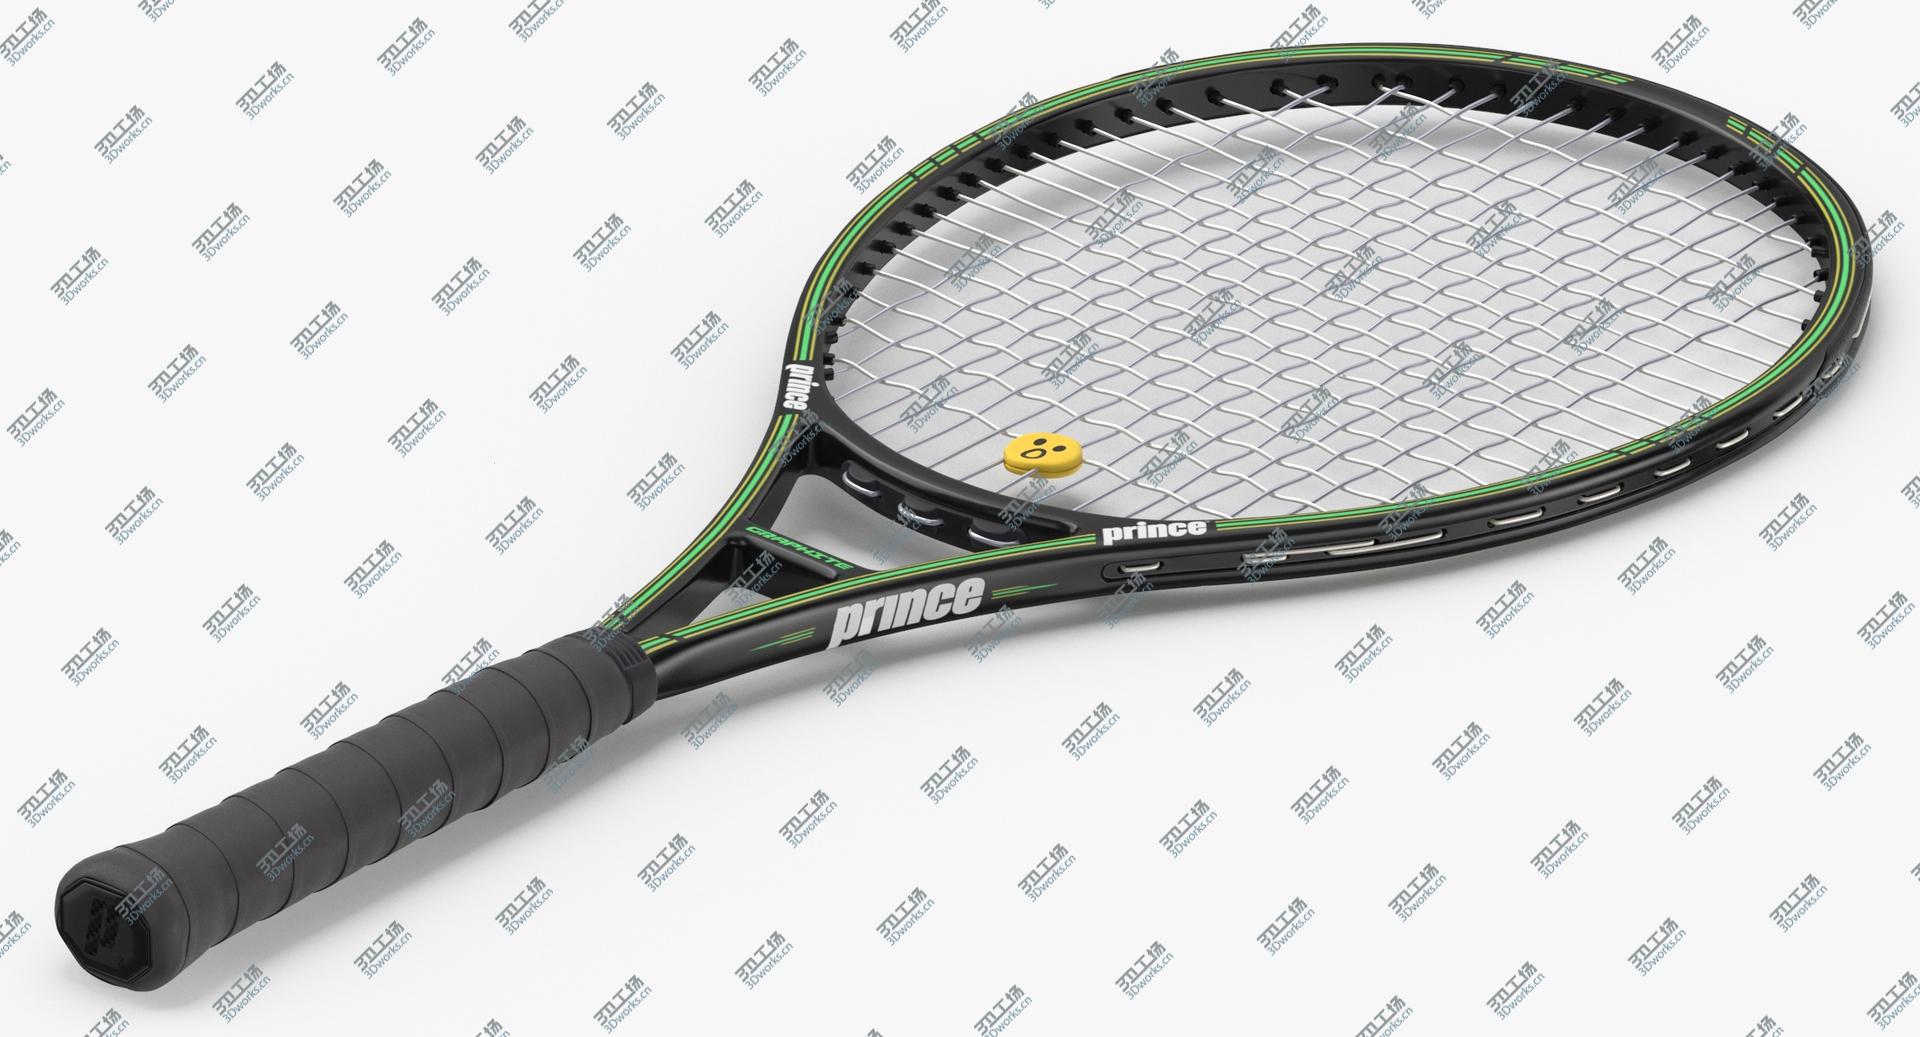 images/goods_img/2021040234/3D Tennis Racket model/4.jpg